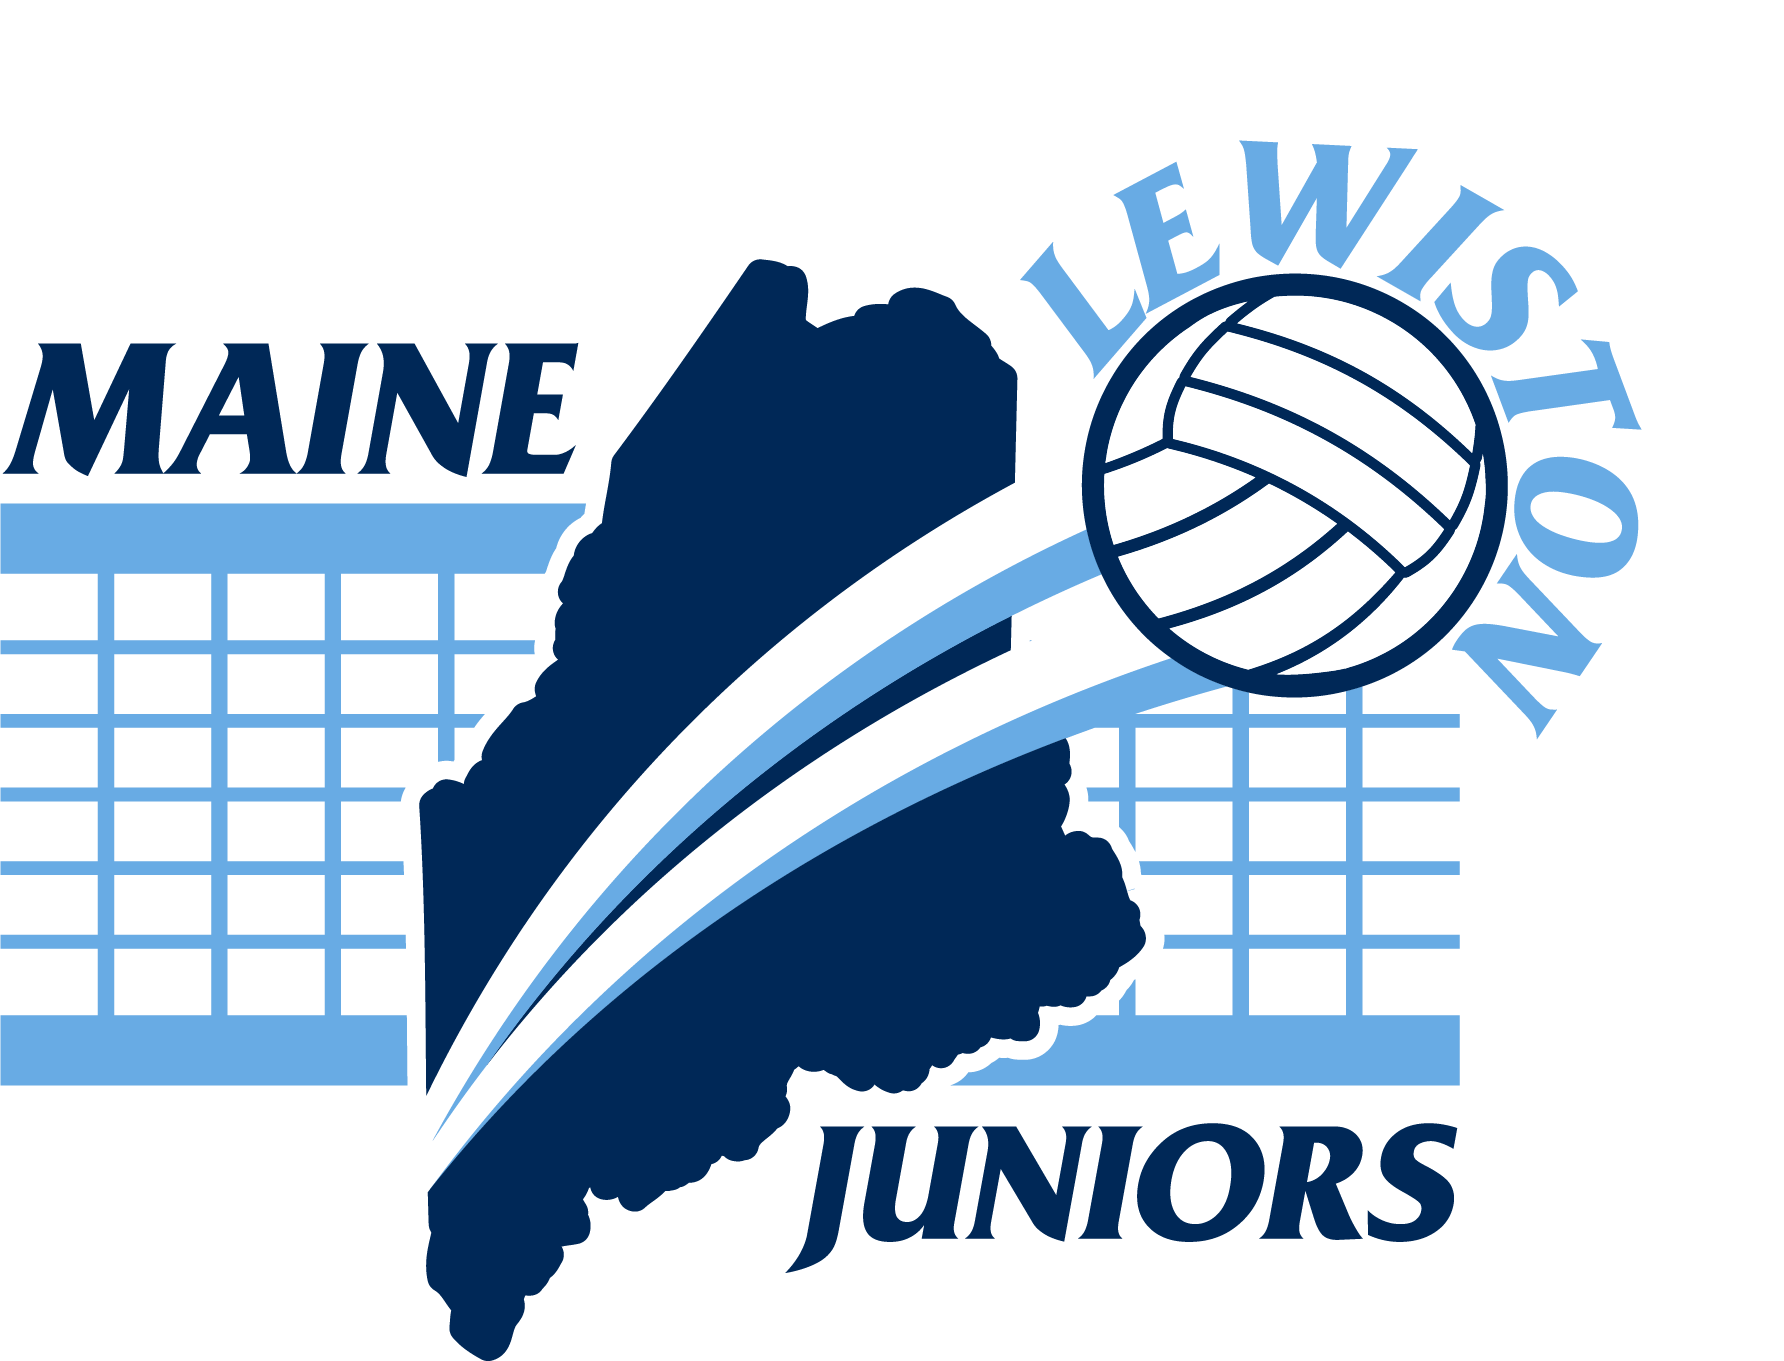 Maine Juniors Lewiston logo[77]